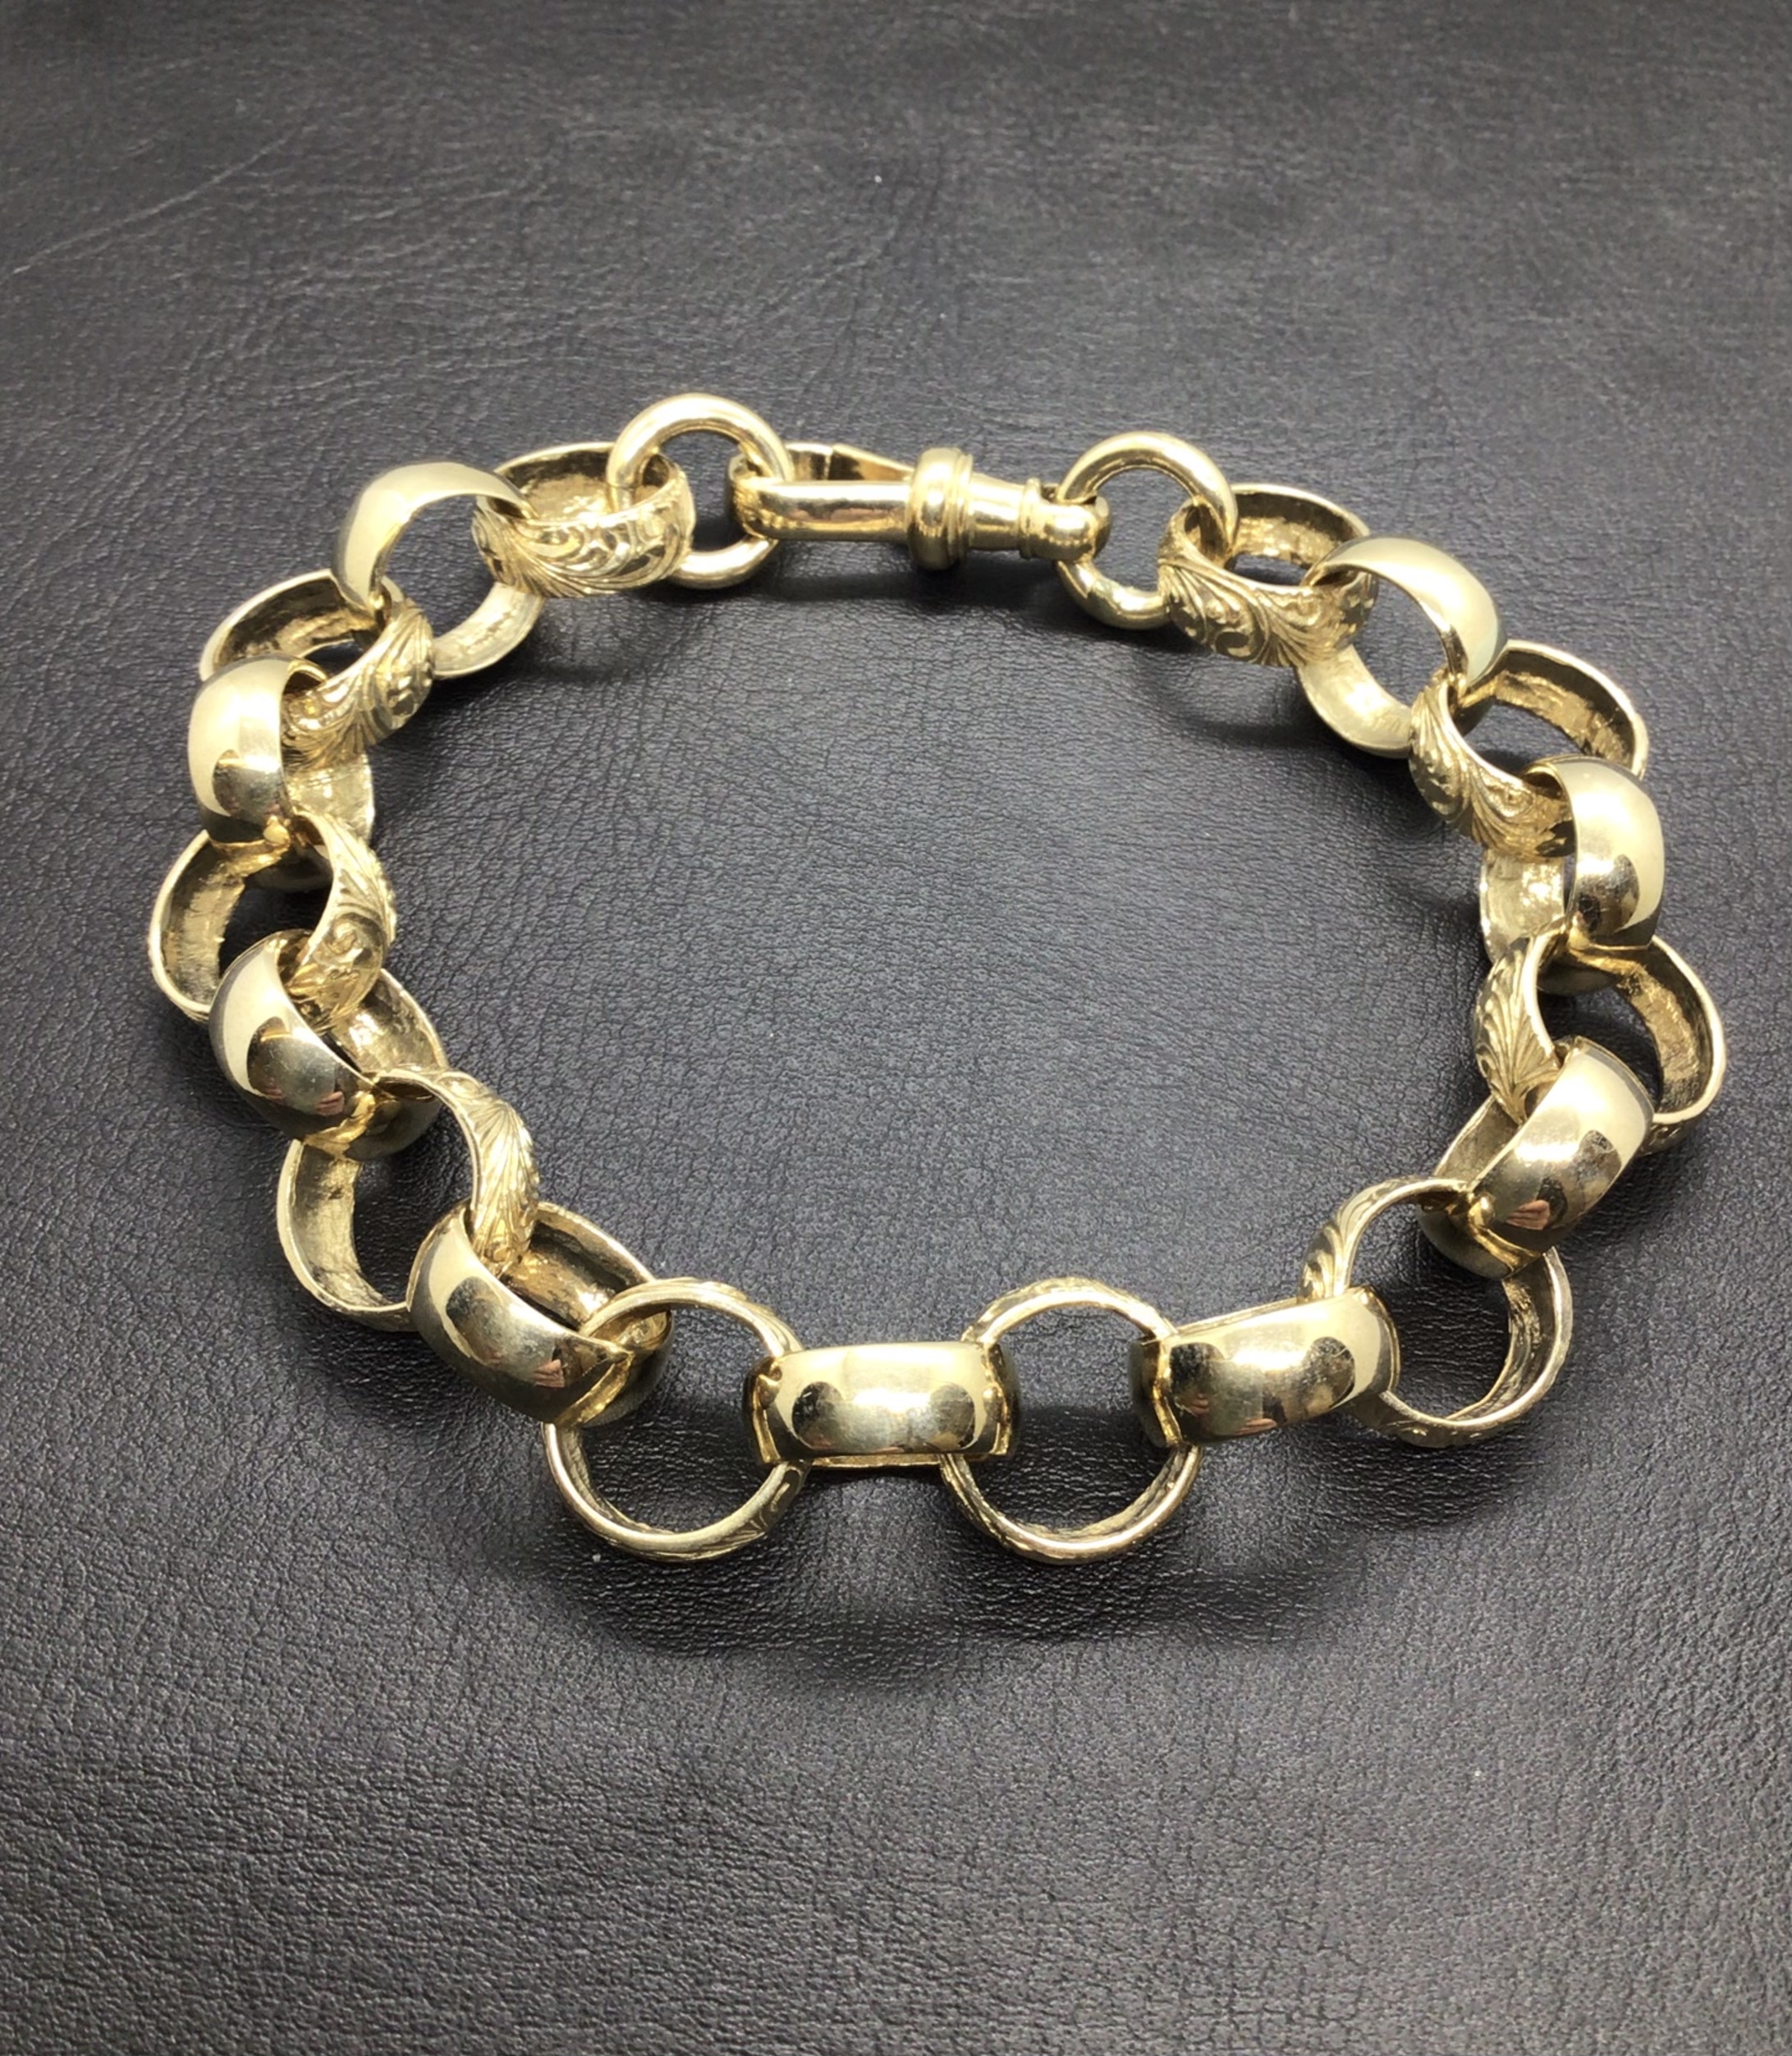 9ct Patterned Link Belcher Bracelet - Be-Tew